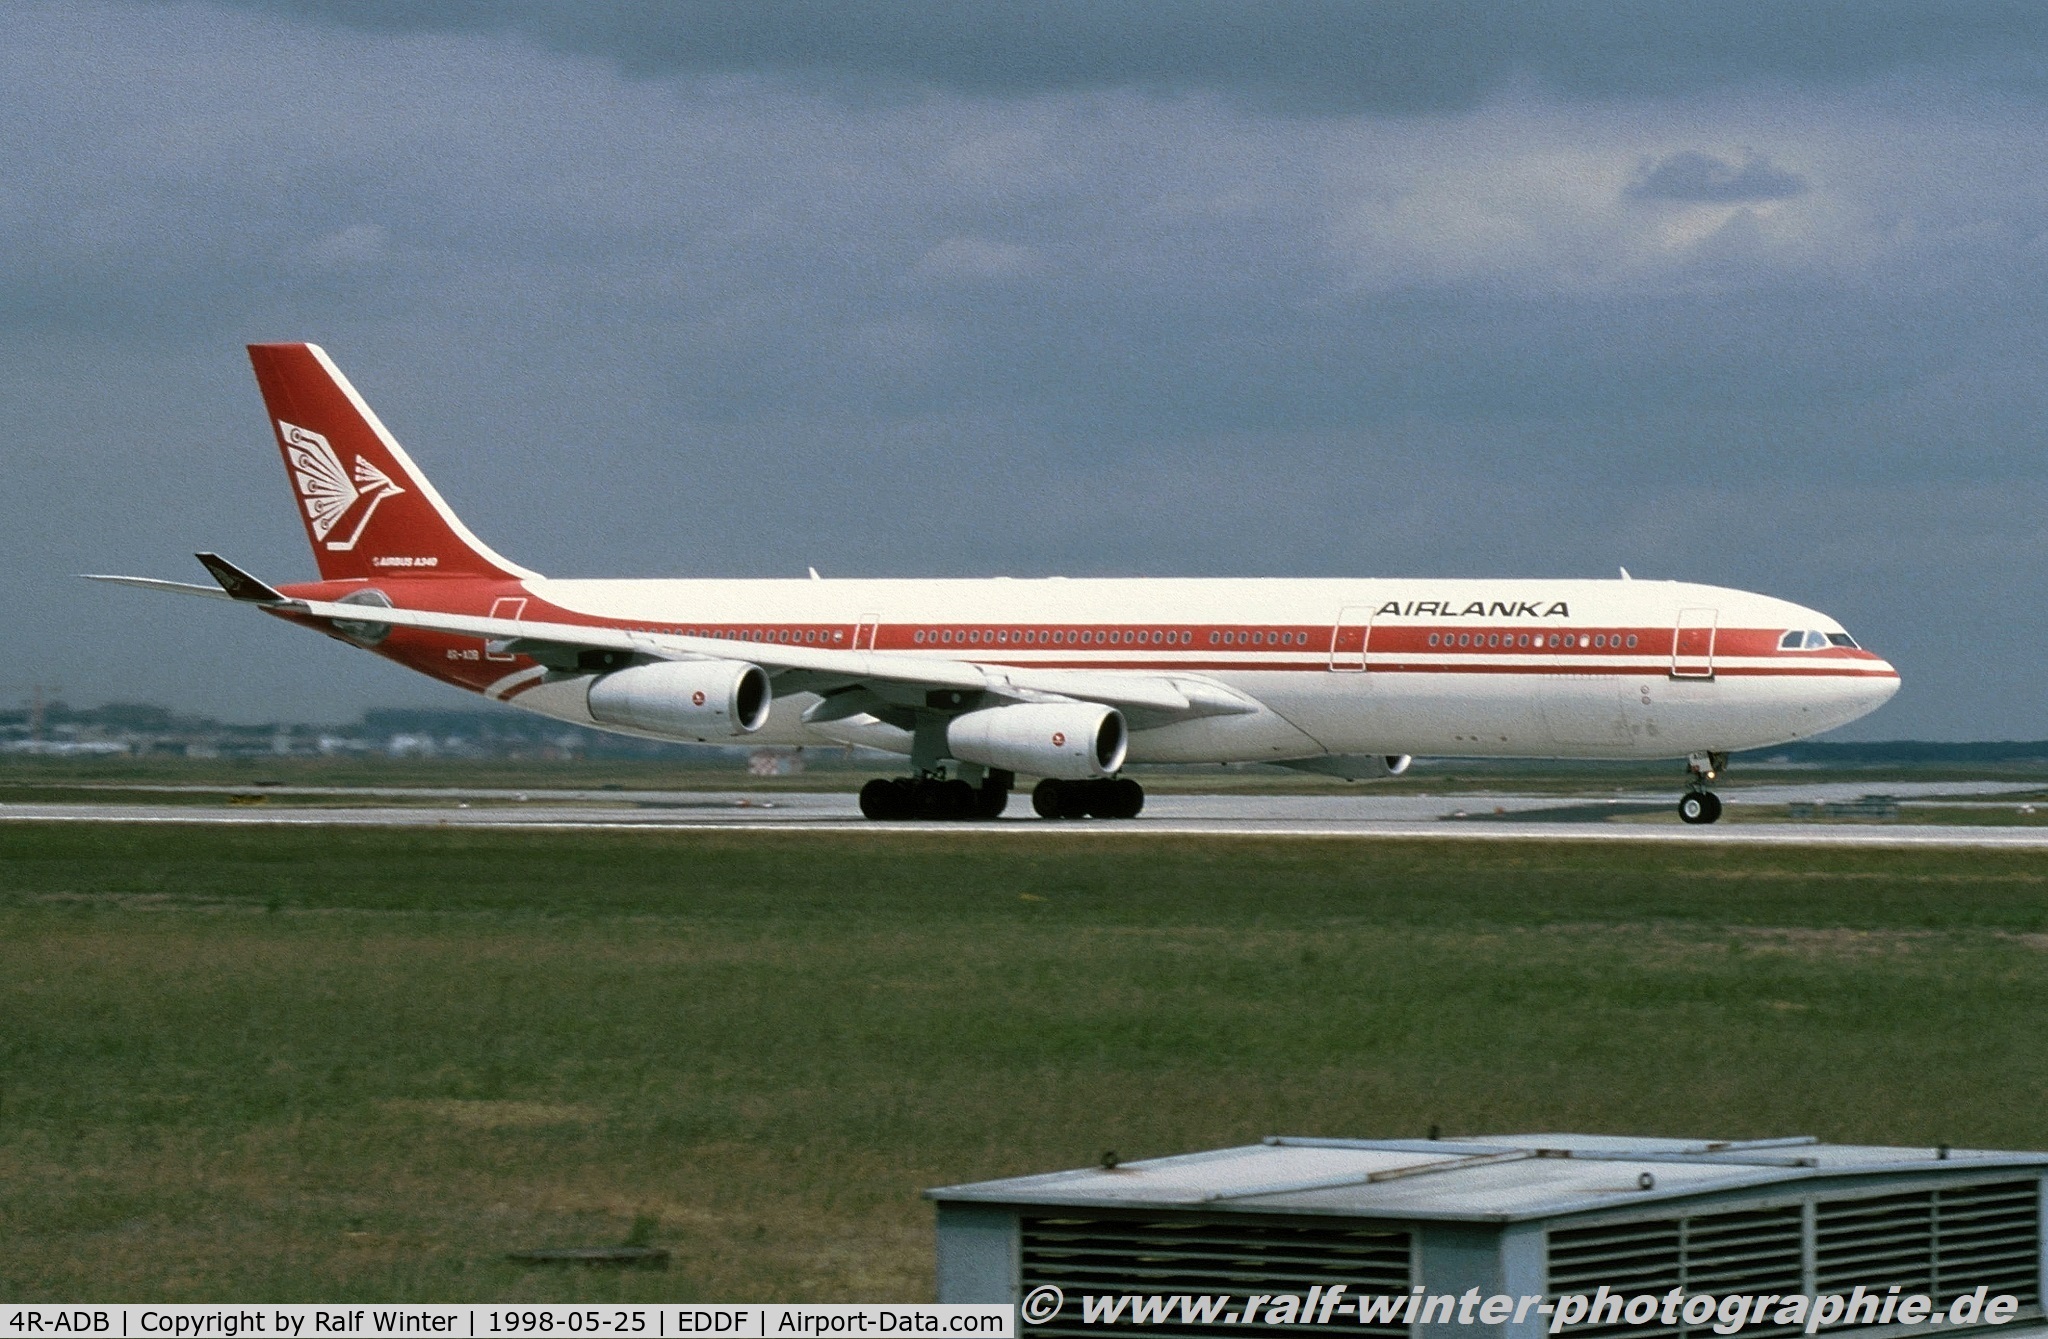 4R-ADB, 1994 Airbus A340-311 C/N 033, Airbus A340-311 - UL ALK Air Lanka - 033 - 4R-ADB - 25.05.1998 - FRA